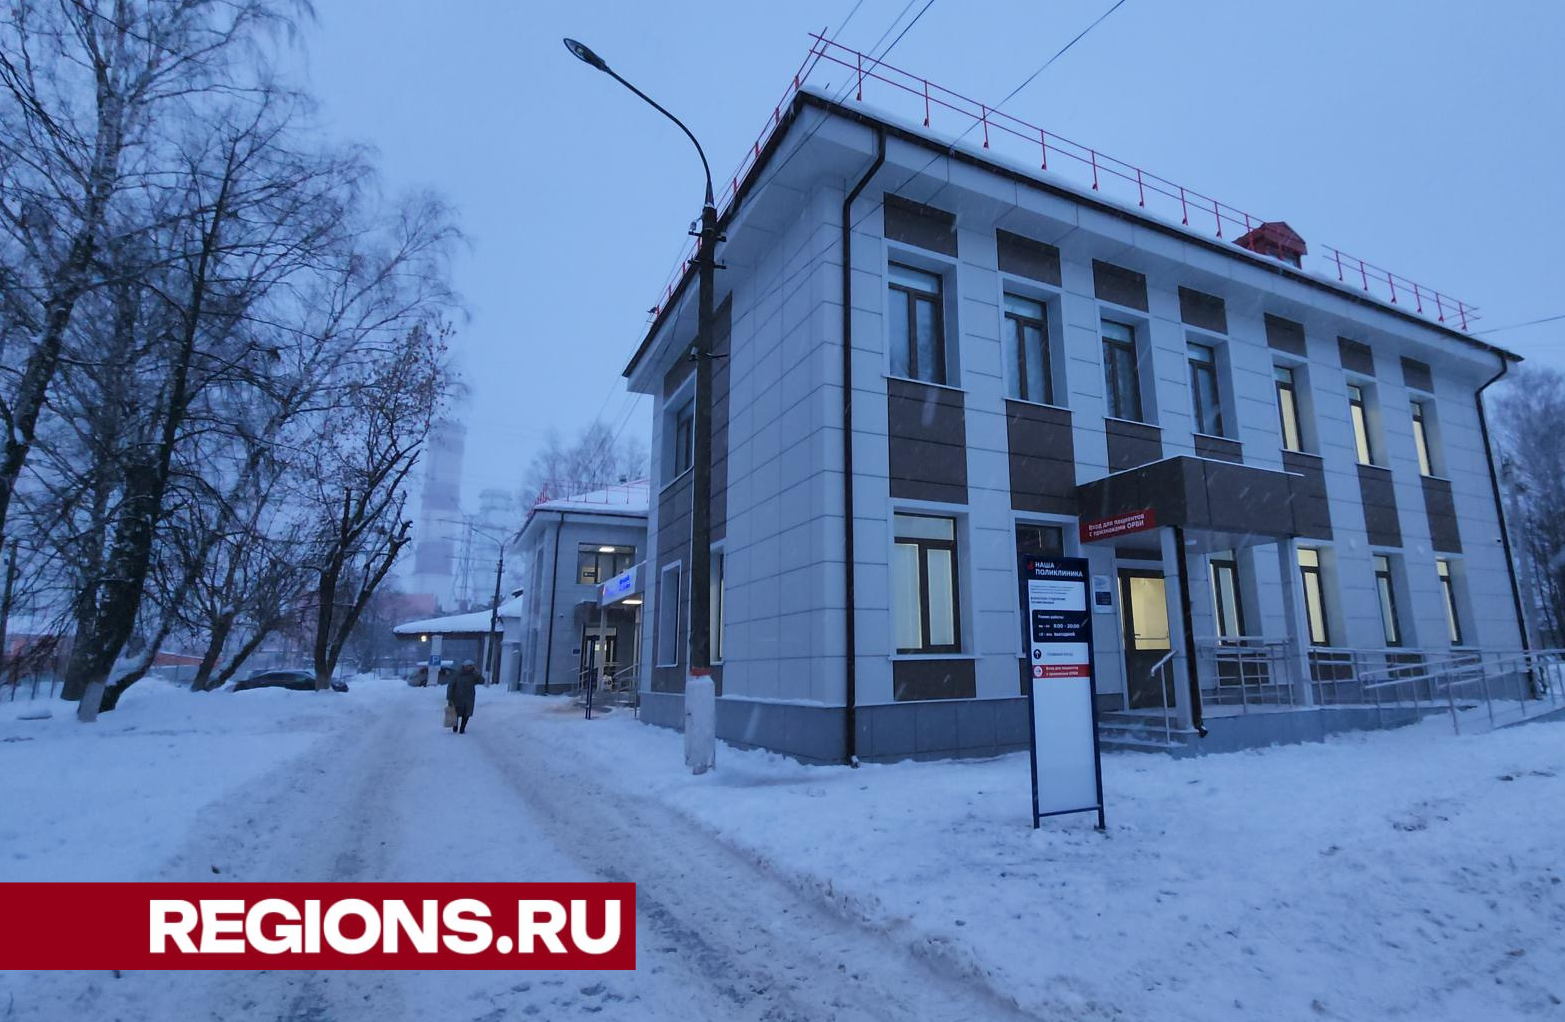 Поликлиника в Павлово-Посадском округе открылась после ремонта